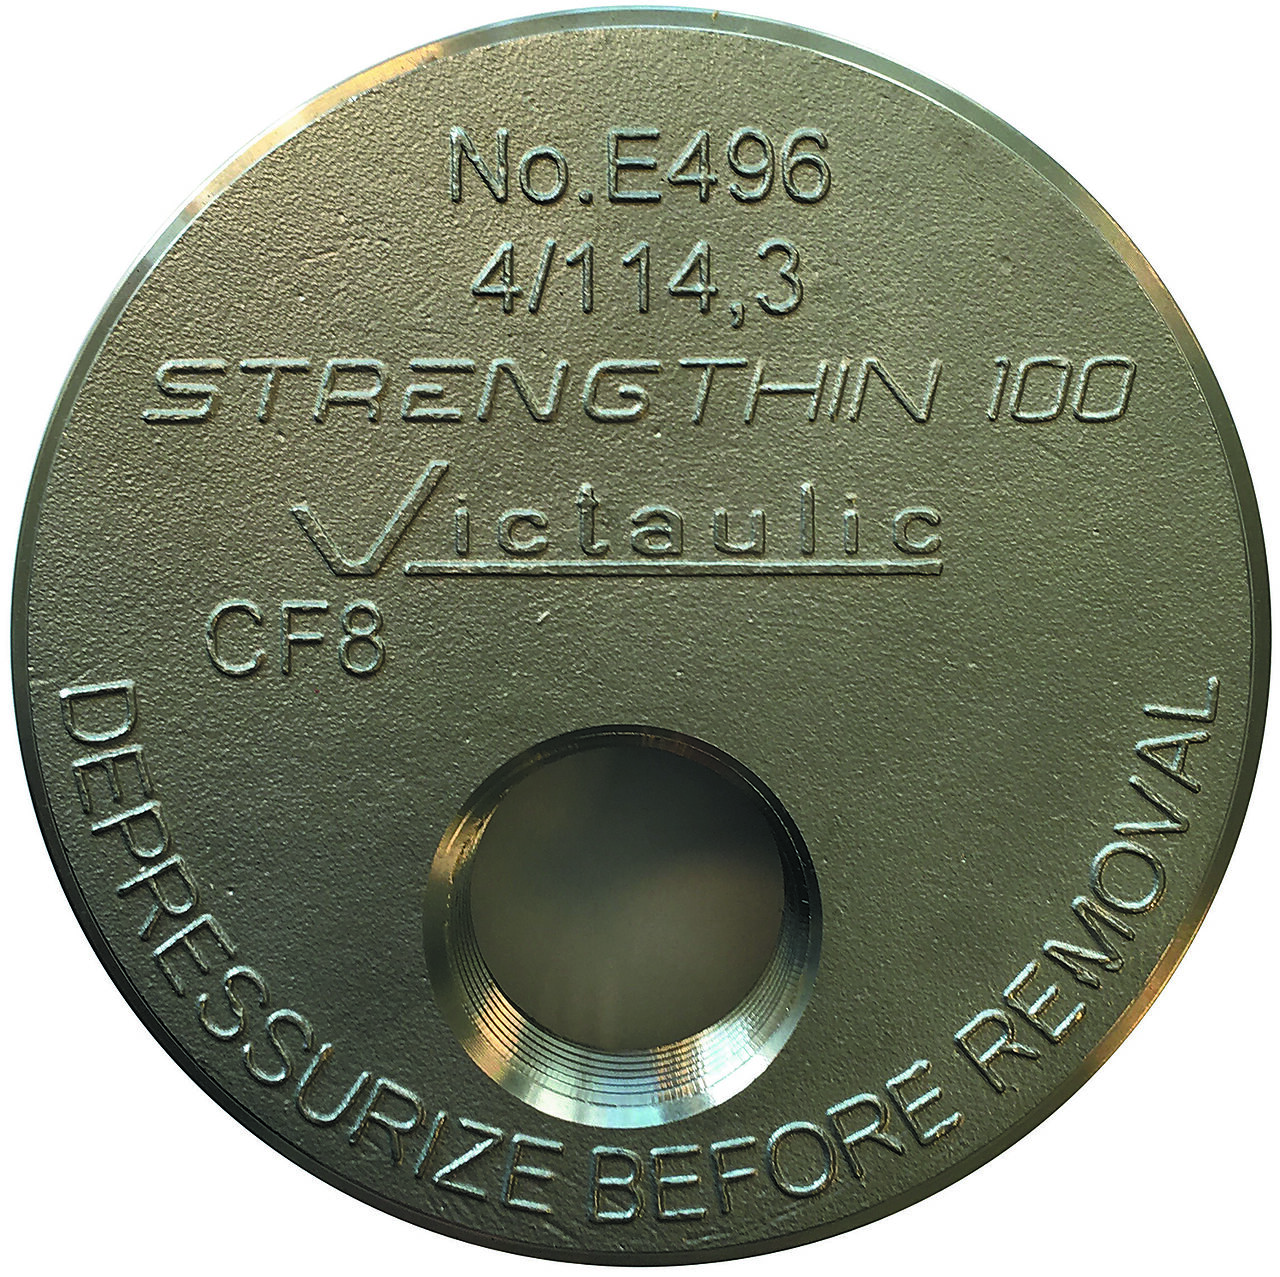 Victaulic Endelokk 139,7 mm x 1" E496 StrengThin100 1